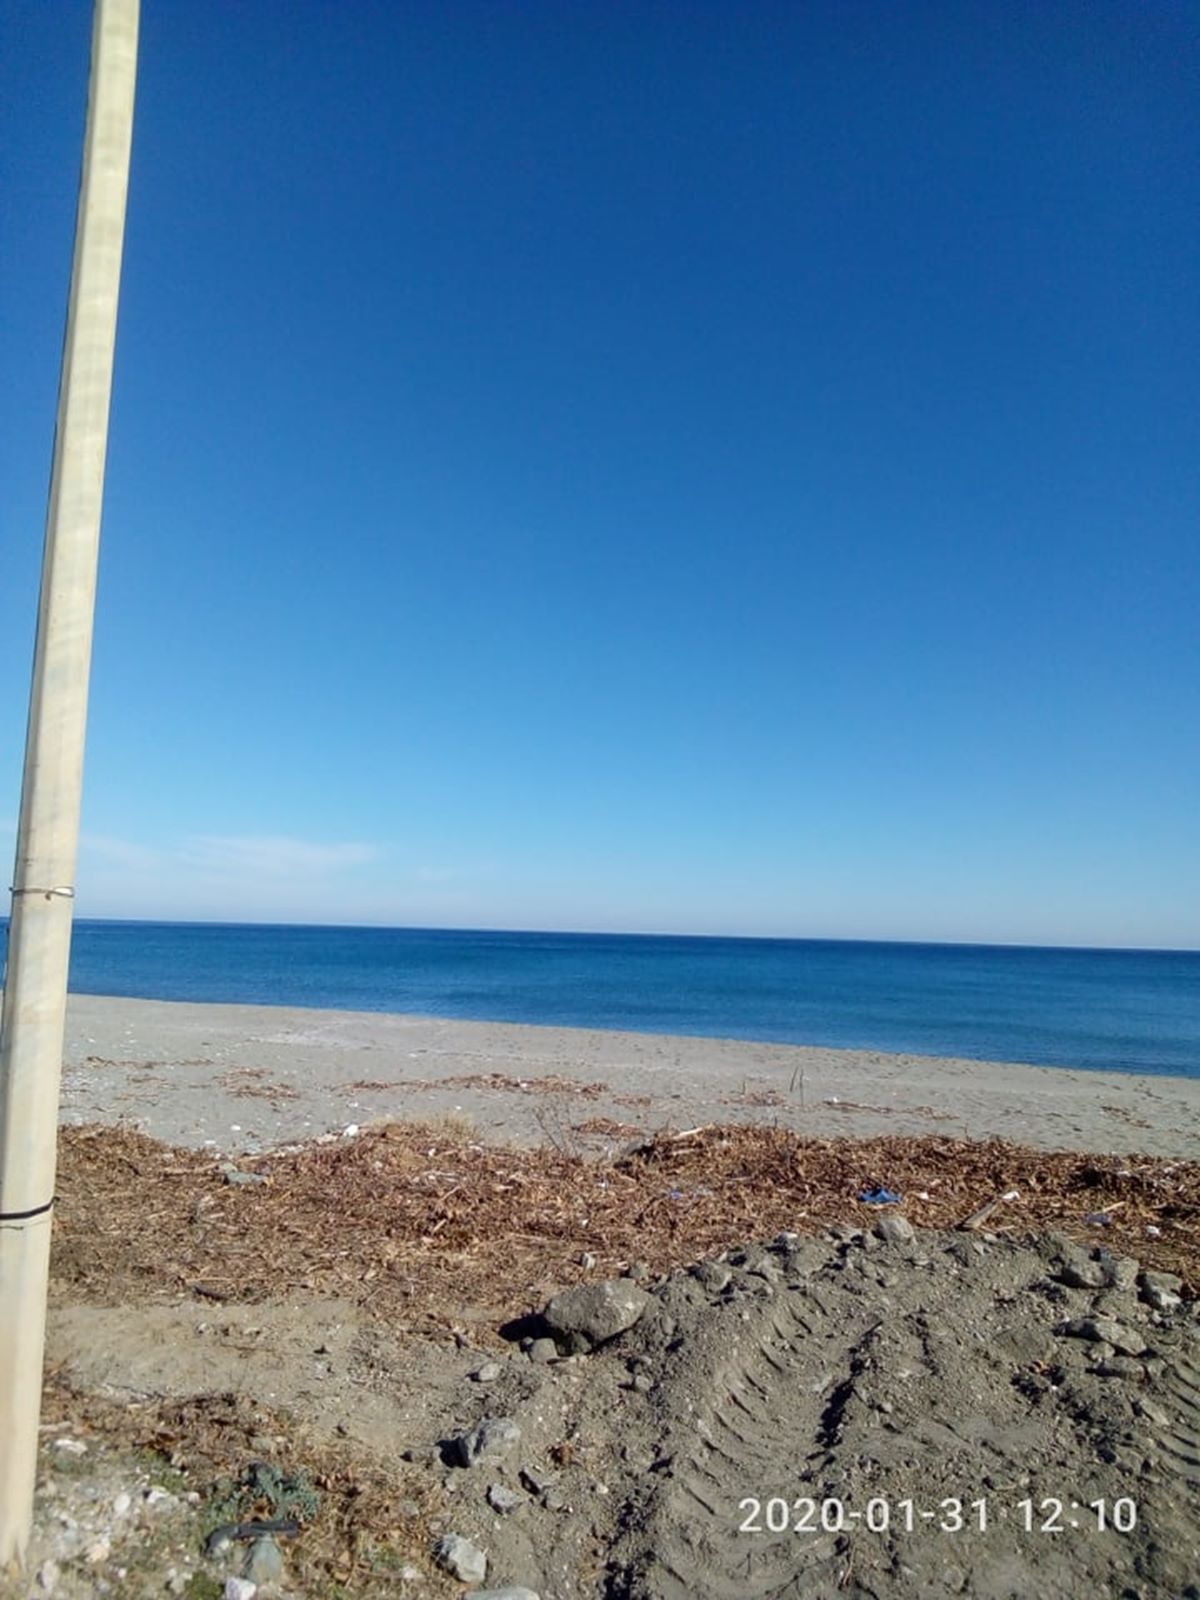 Καλοκαιρινή μέρα και θάλασσα «λάδι» μέσα στο... καταχείμωνο στον Αγιόκαμπο (φωτο)